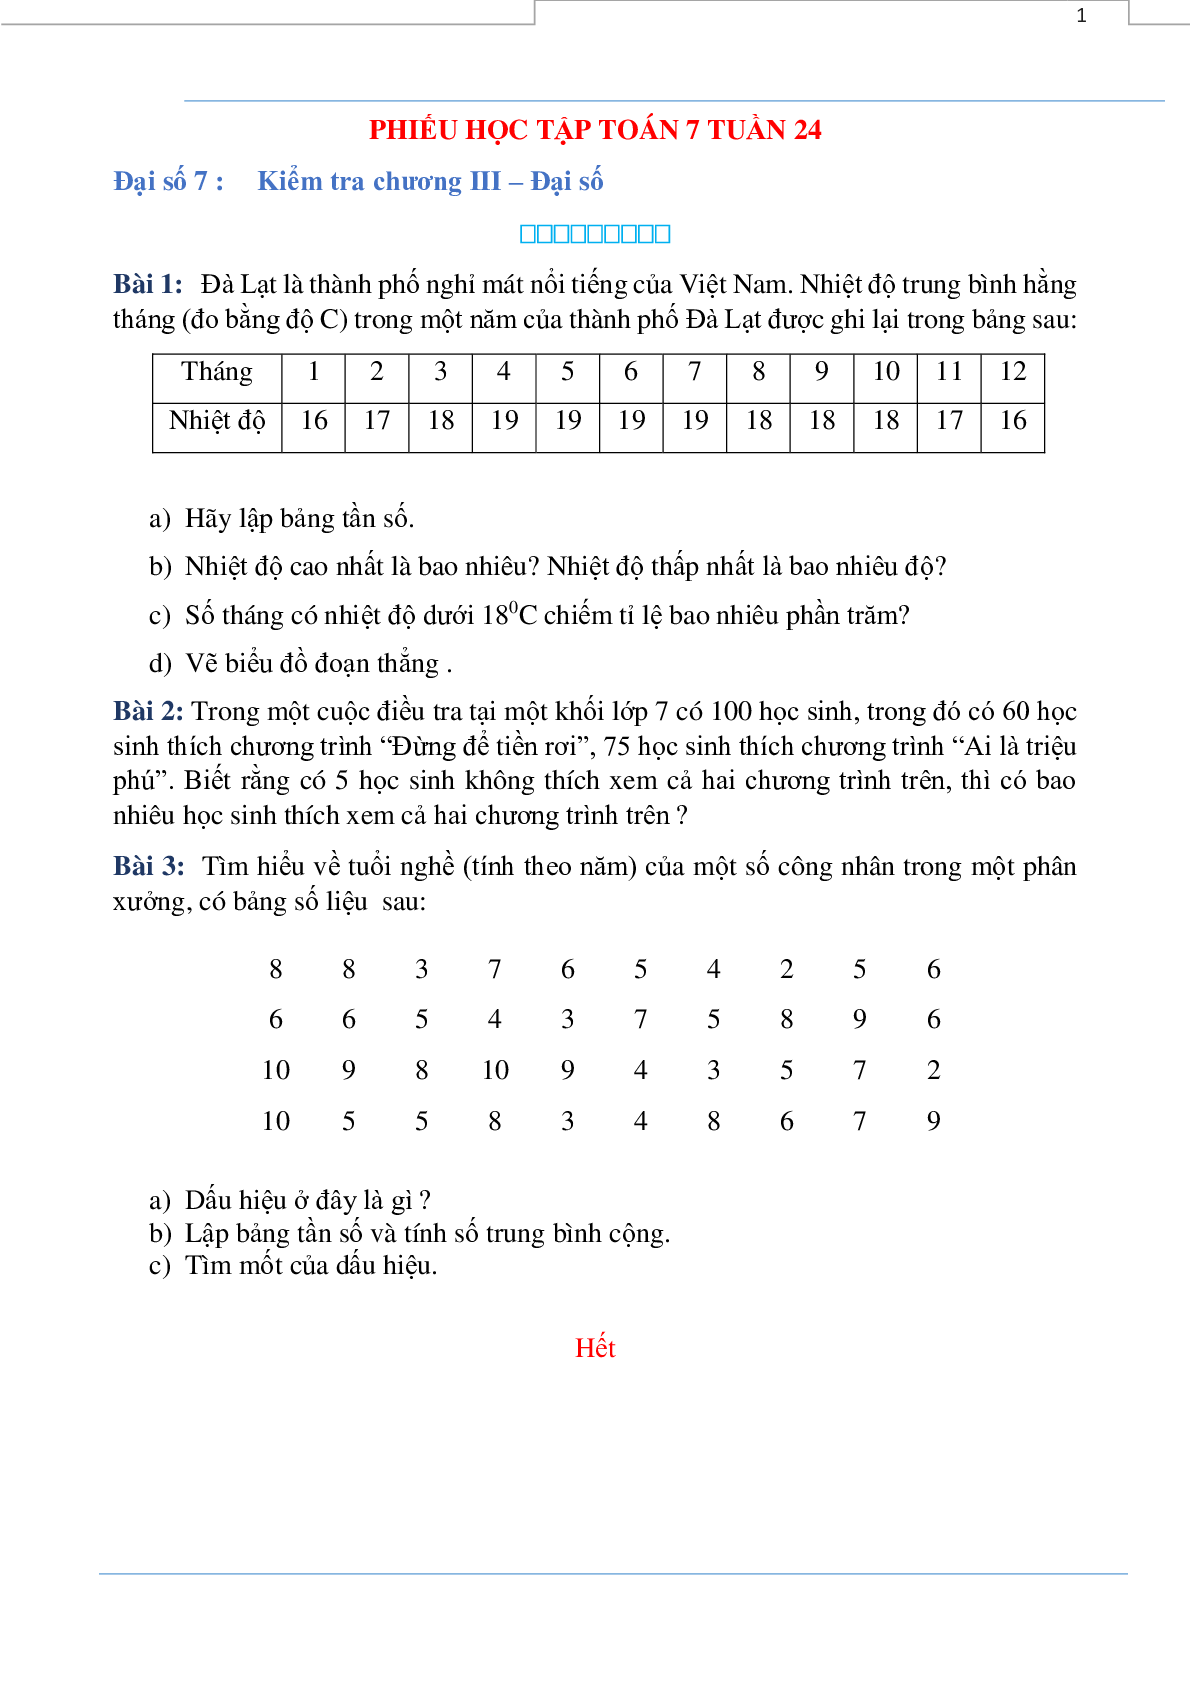 Phiếu bài tập tuần 24 - Toán 7 (trang 1)